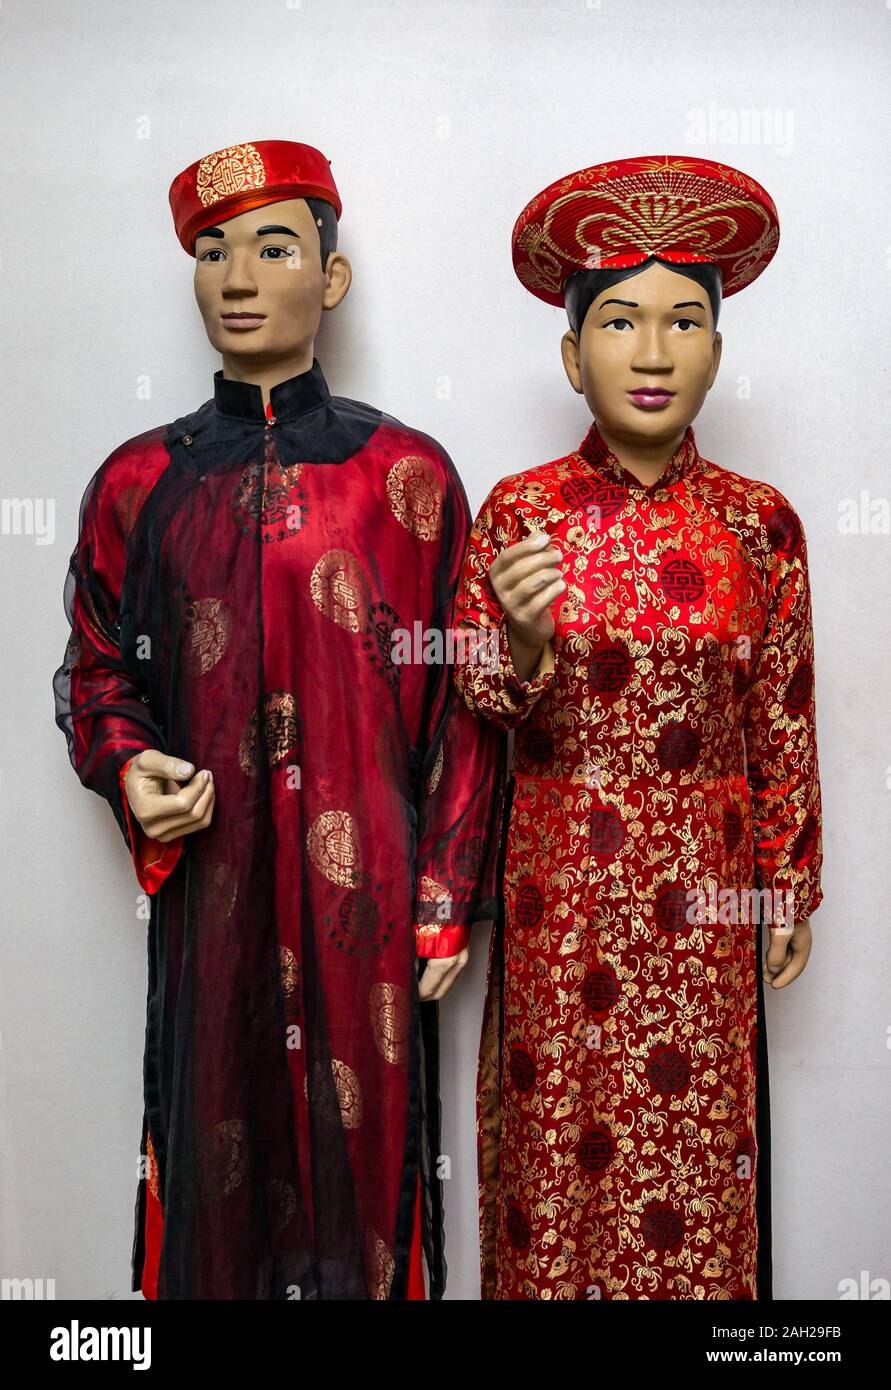 Modèles dans la pièce vêtu du costume traditionnel de style chinois robes de soie rouge, Hokkaido Museum of Ethnology, Nord du Vietnam, Asie Banque D'Images